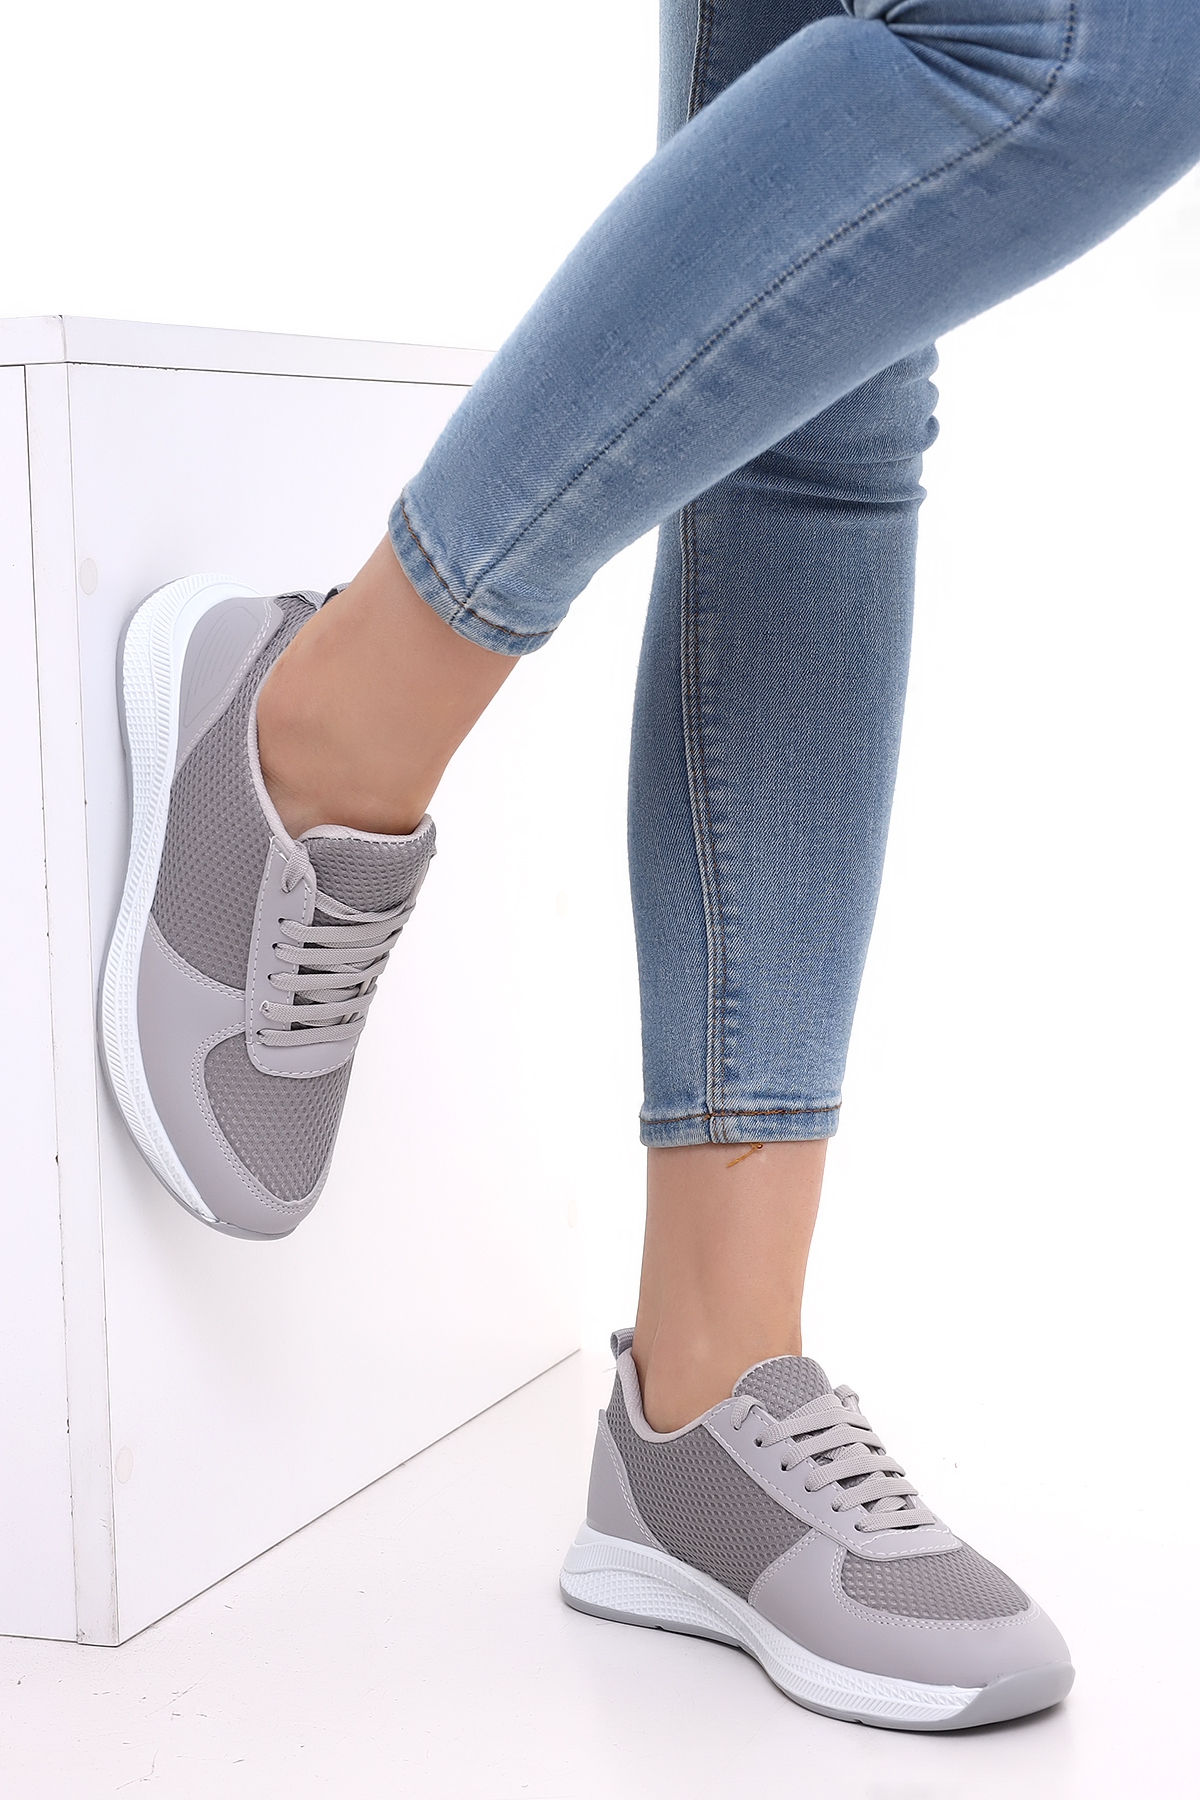 Wordex F3 Kalın Taban Günlük Kadın Fileli Yazlık Sneaker Spor Ayakkabı Gri